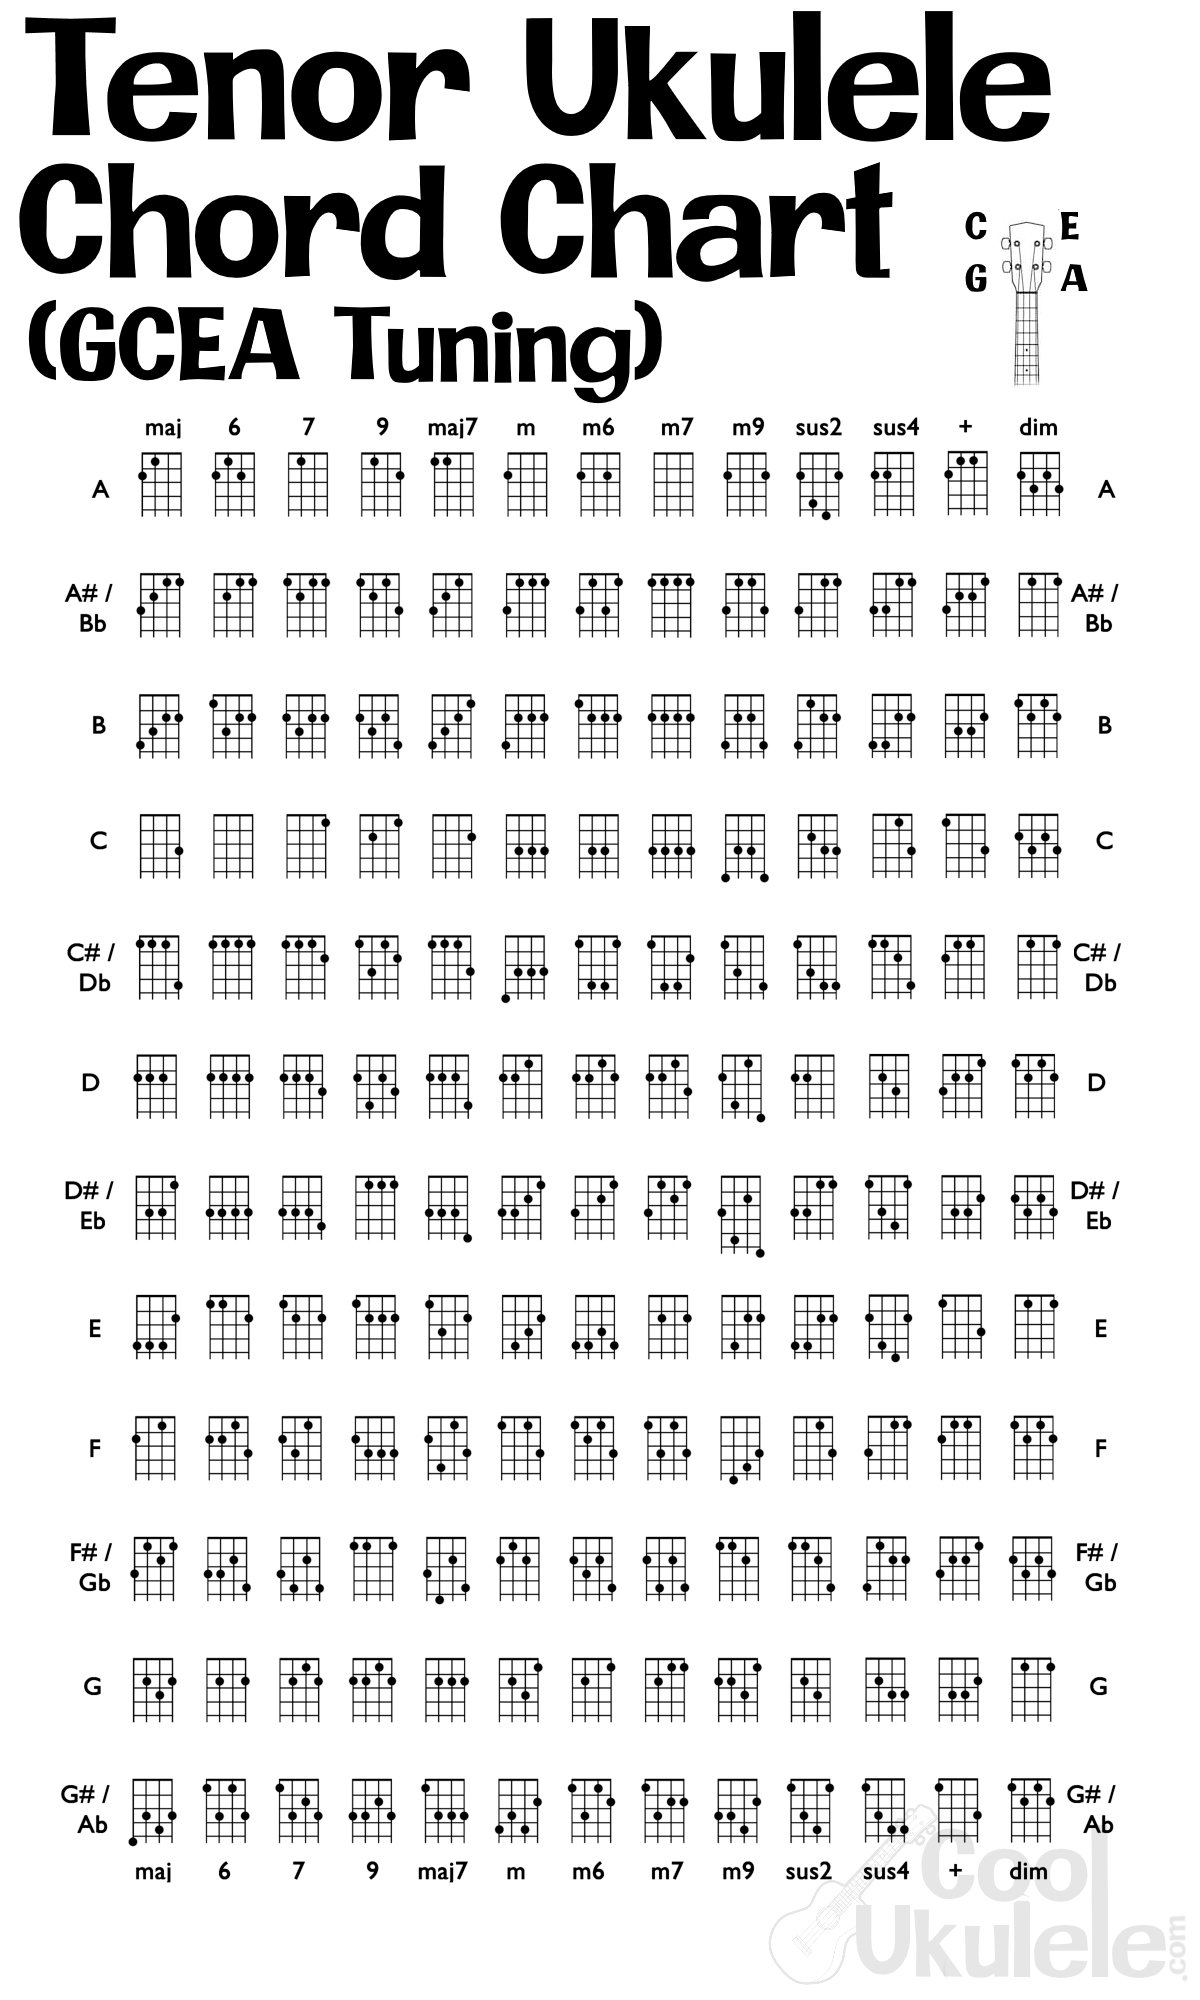 tenor-ukulele-tuning-high-g-low-g-easy-coolukulele